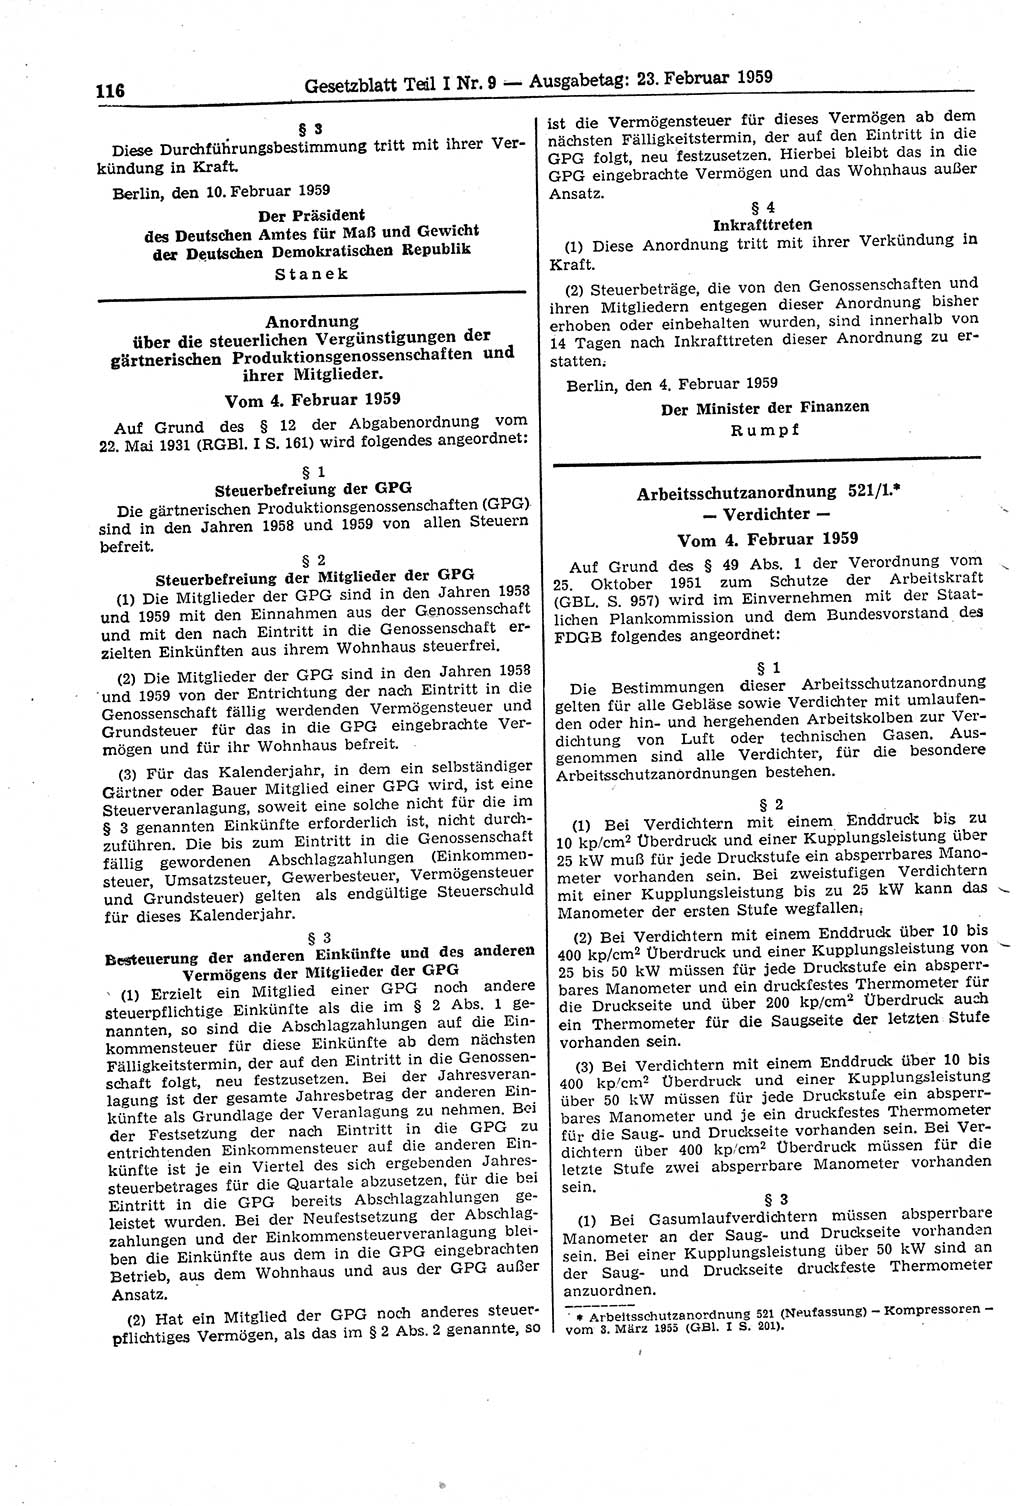 Gesetzblatt (GBl.) der Deutschen Demokratischen Republik (DDR) Teil Ⅰ 1959, Seite 116 (GBl. DDR Ⅰ 1959, S. 116)